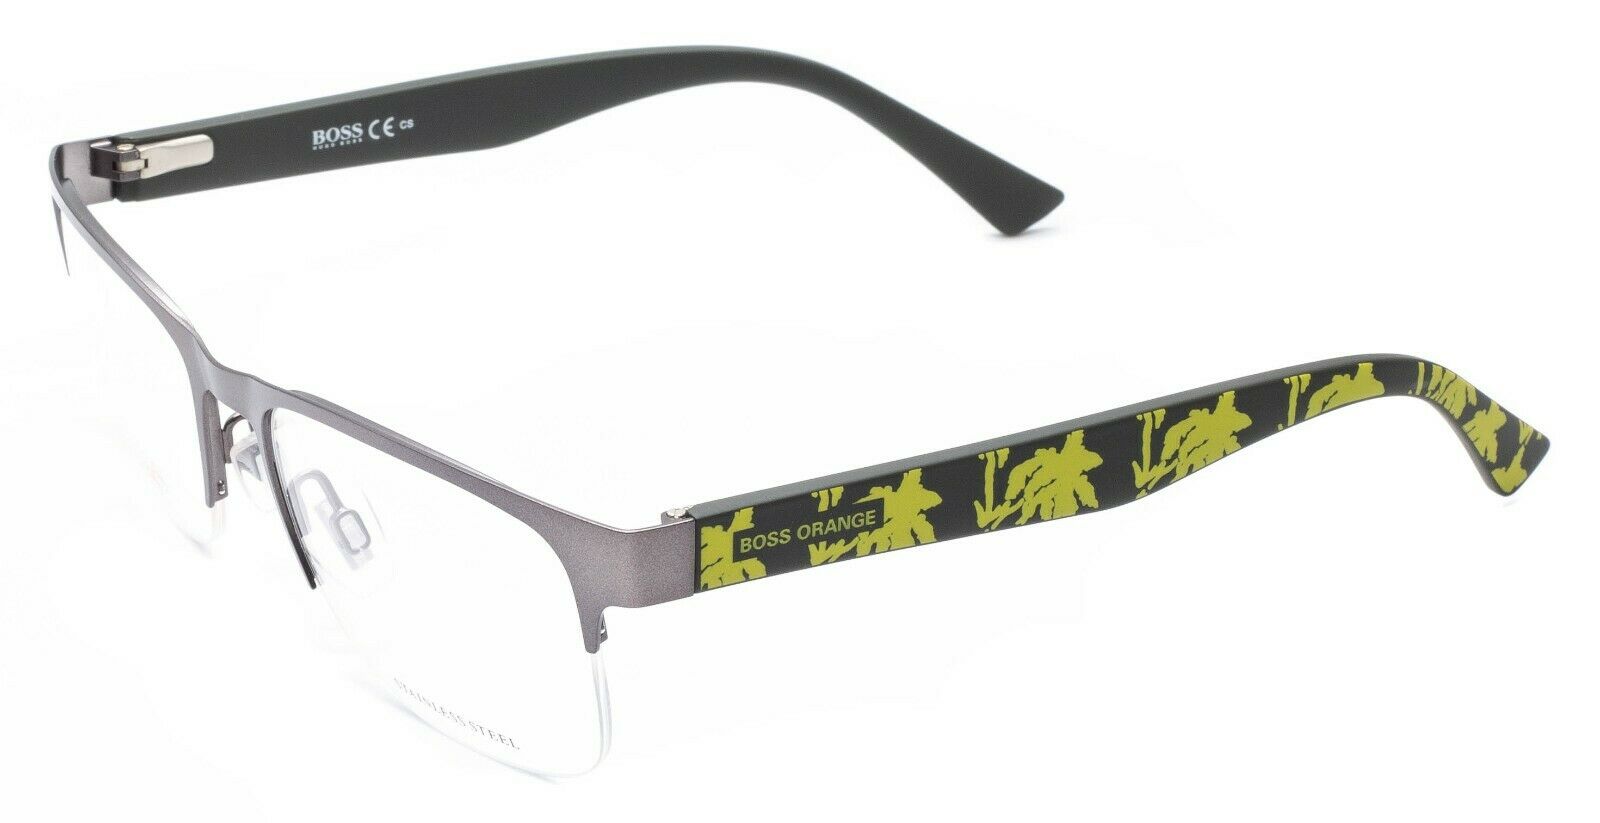 Forstærke kapsel flertal BOSS ORANGE BO 0255 Q9G 53mm Eyewear FRAMES RX Optical Glasses Eyeglasses -  New - GGV Eyewear